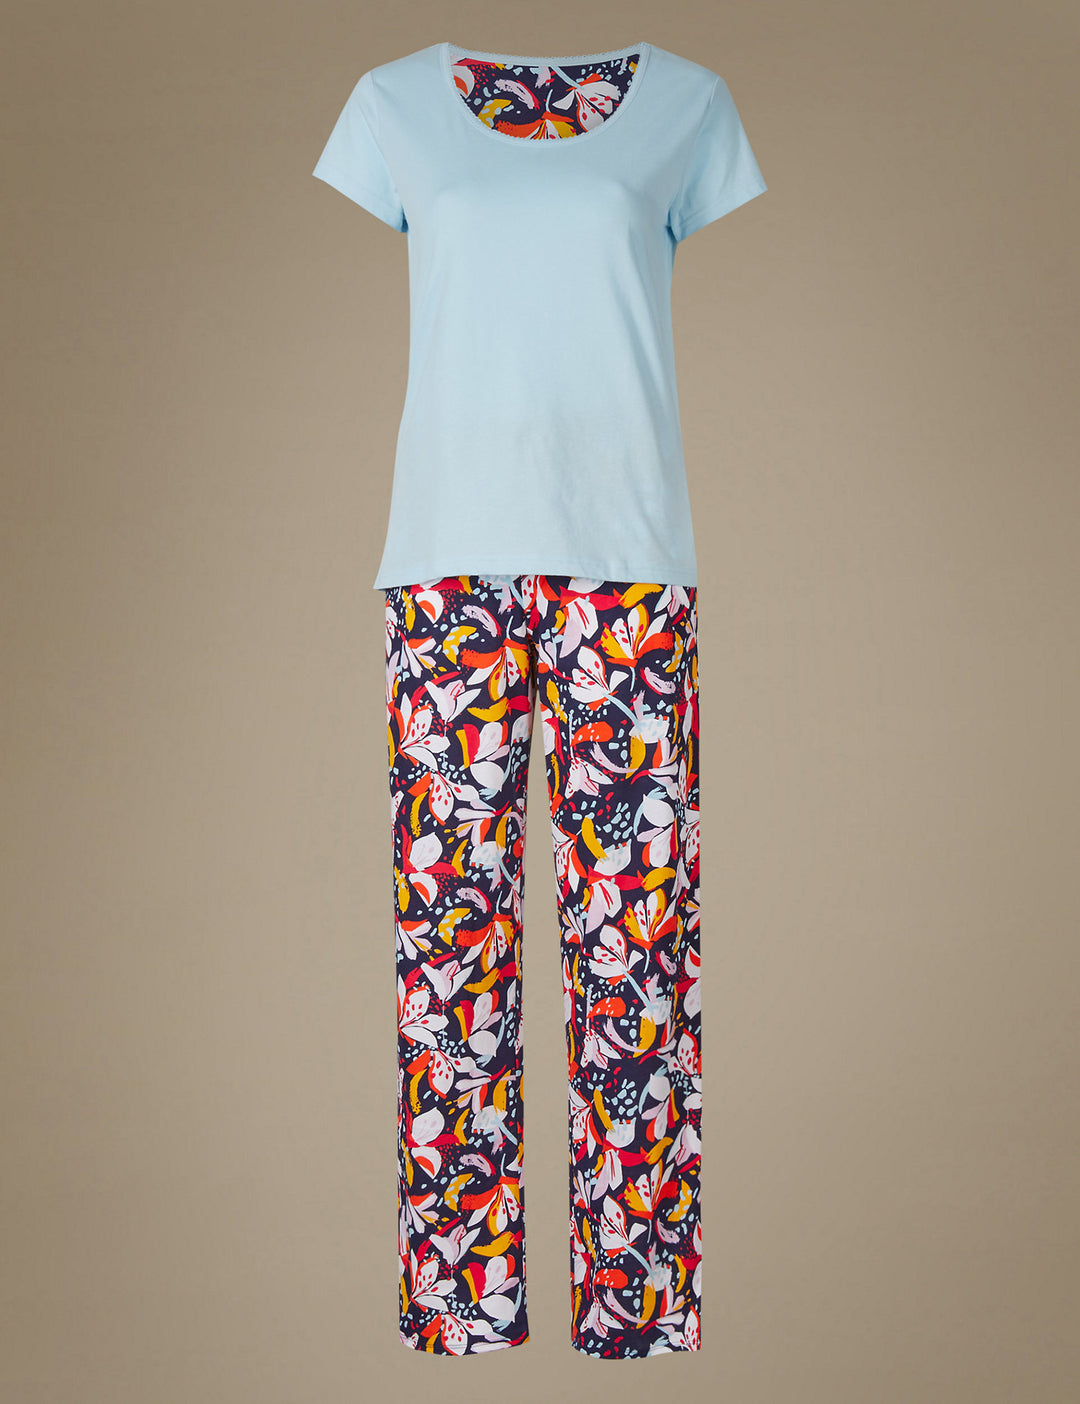 M&S Ladies Pajama Suit T37/4246F